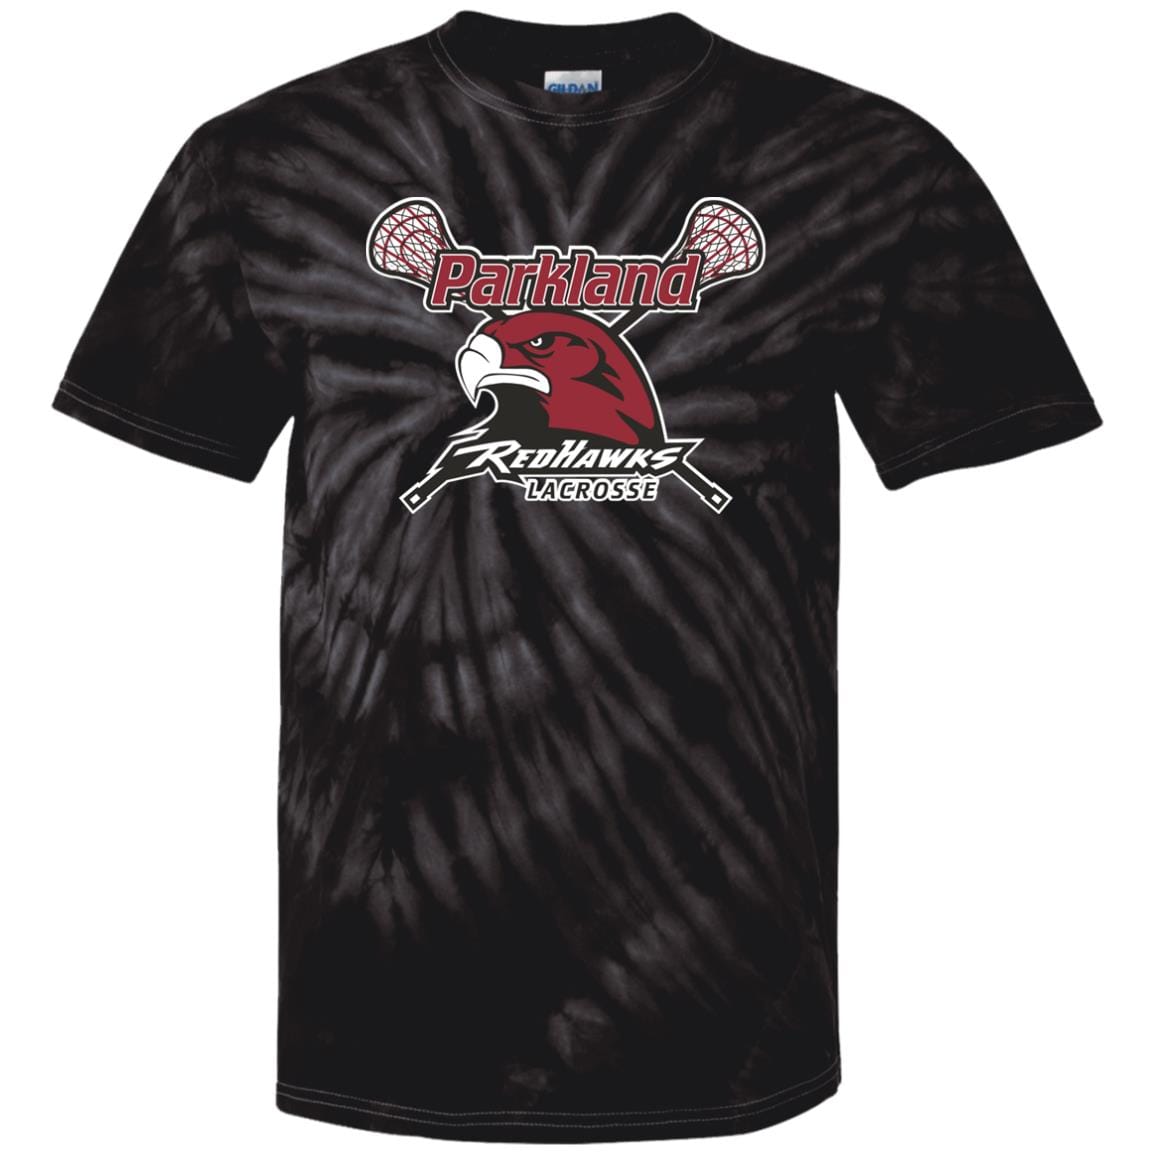 Parkland Redhawks Lacrosse Adult Cotton Tie Dye T-Shirt Signature Lacrosse